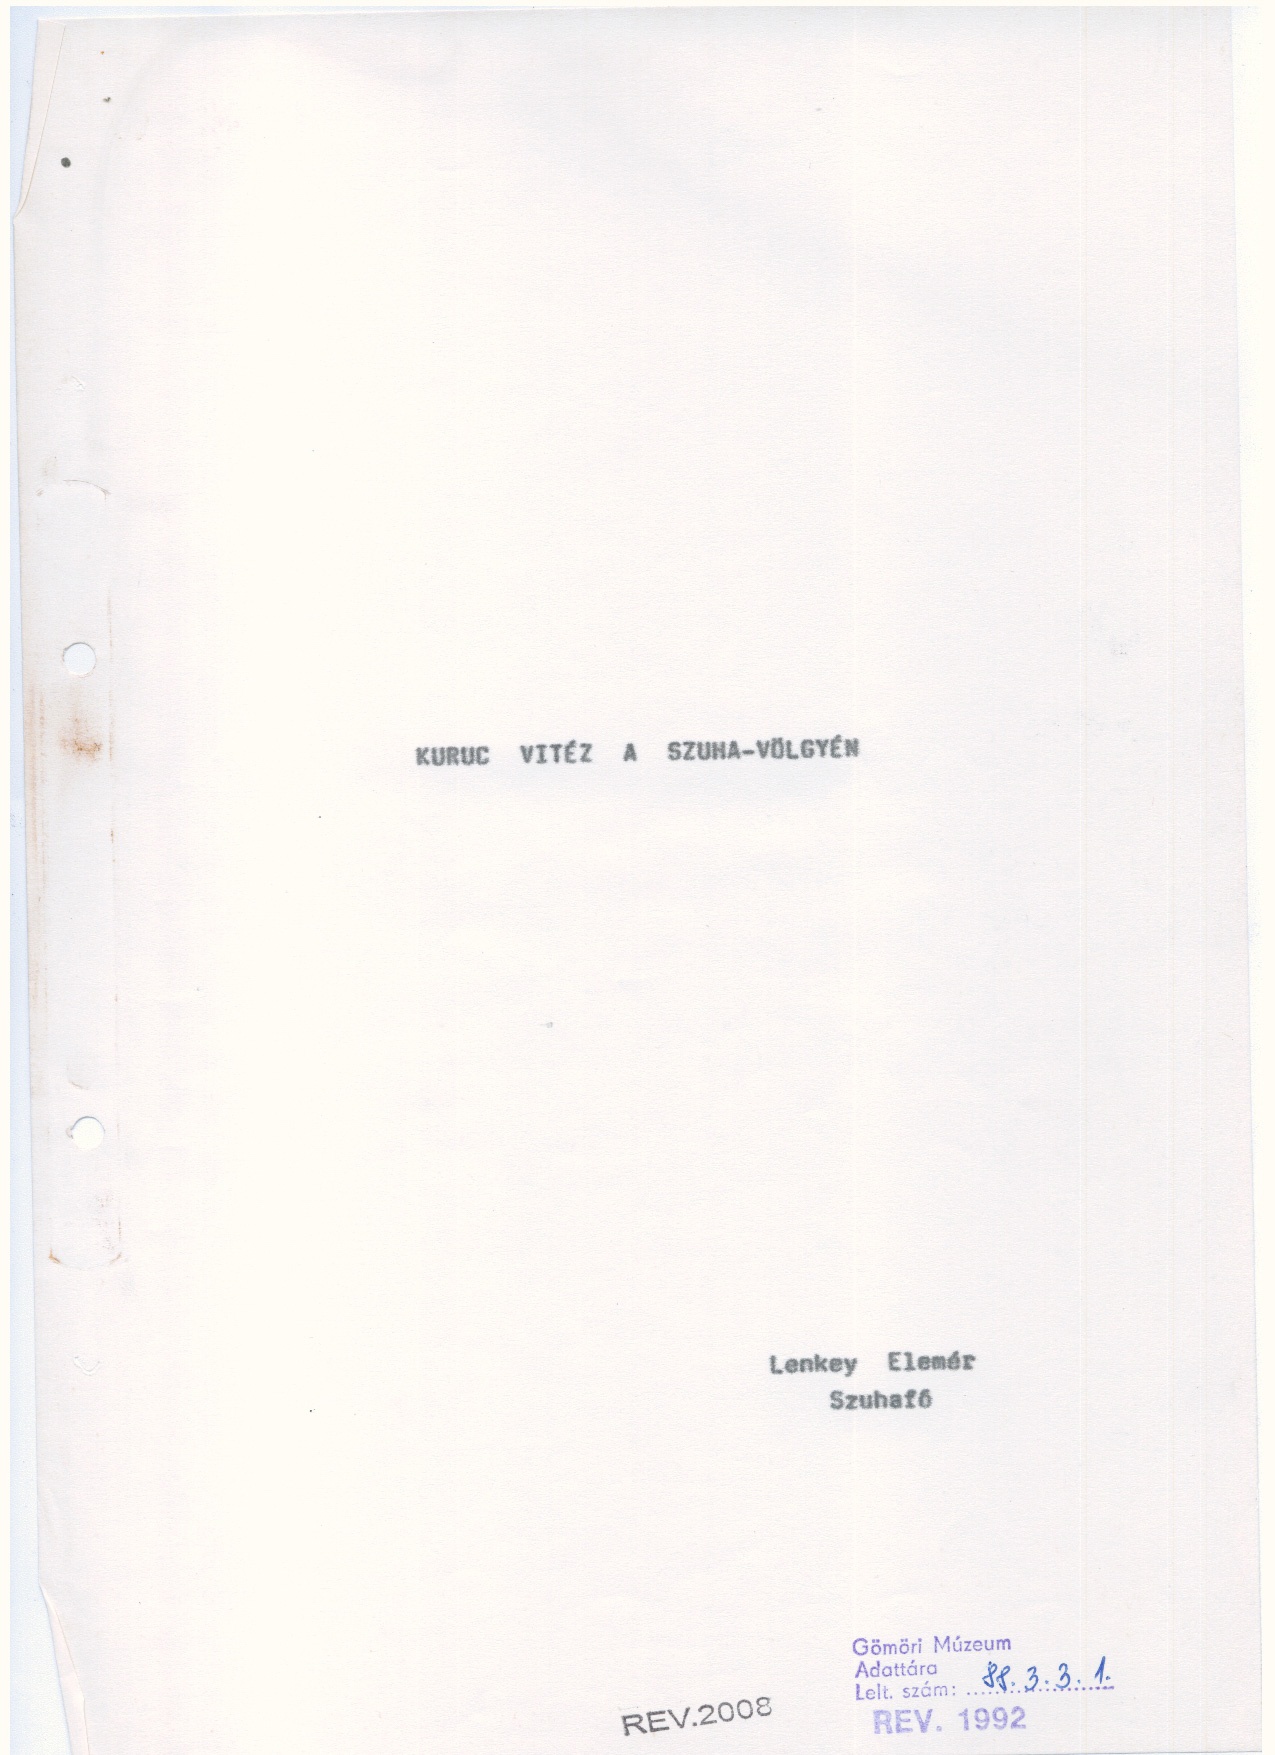 Lenkey Elemér: Kézirat    1988. (Gömöri Múzeum, Putnok CC BY-NC-SA)